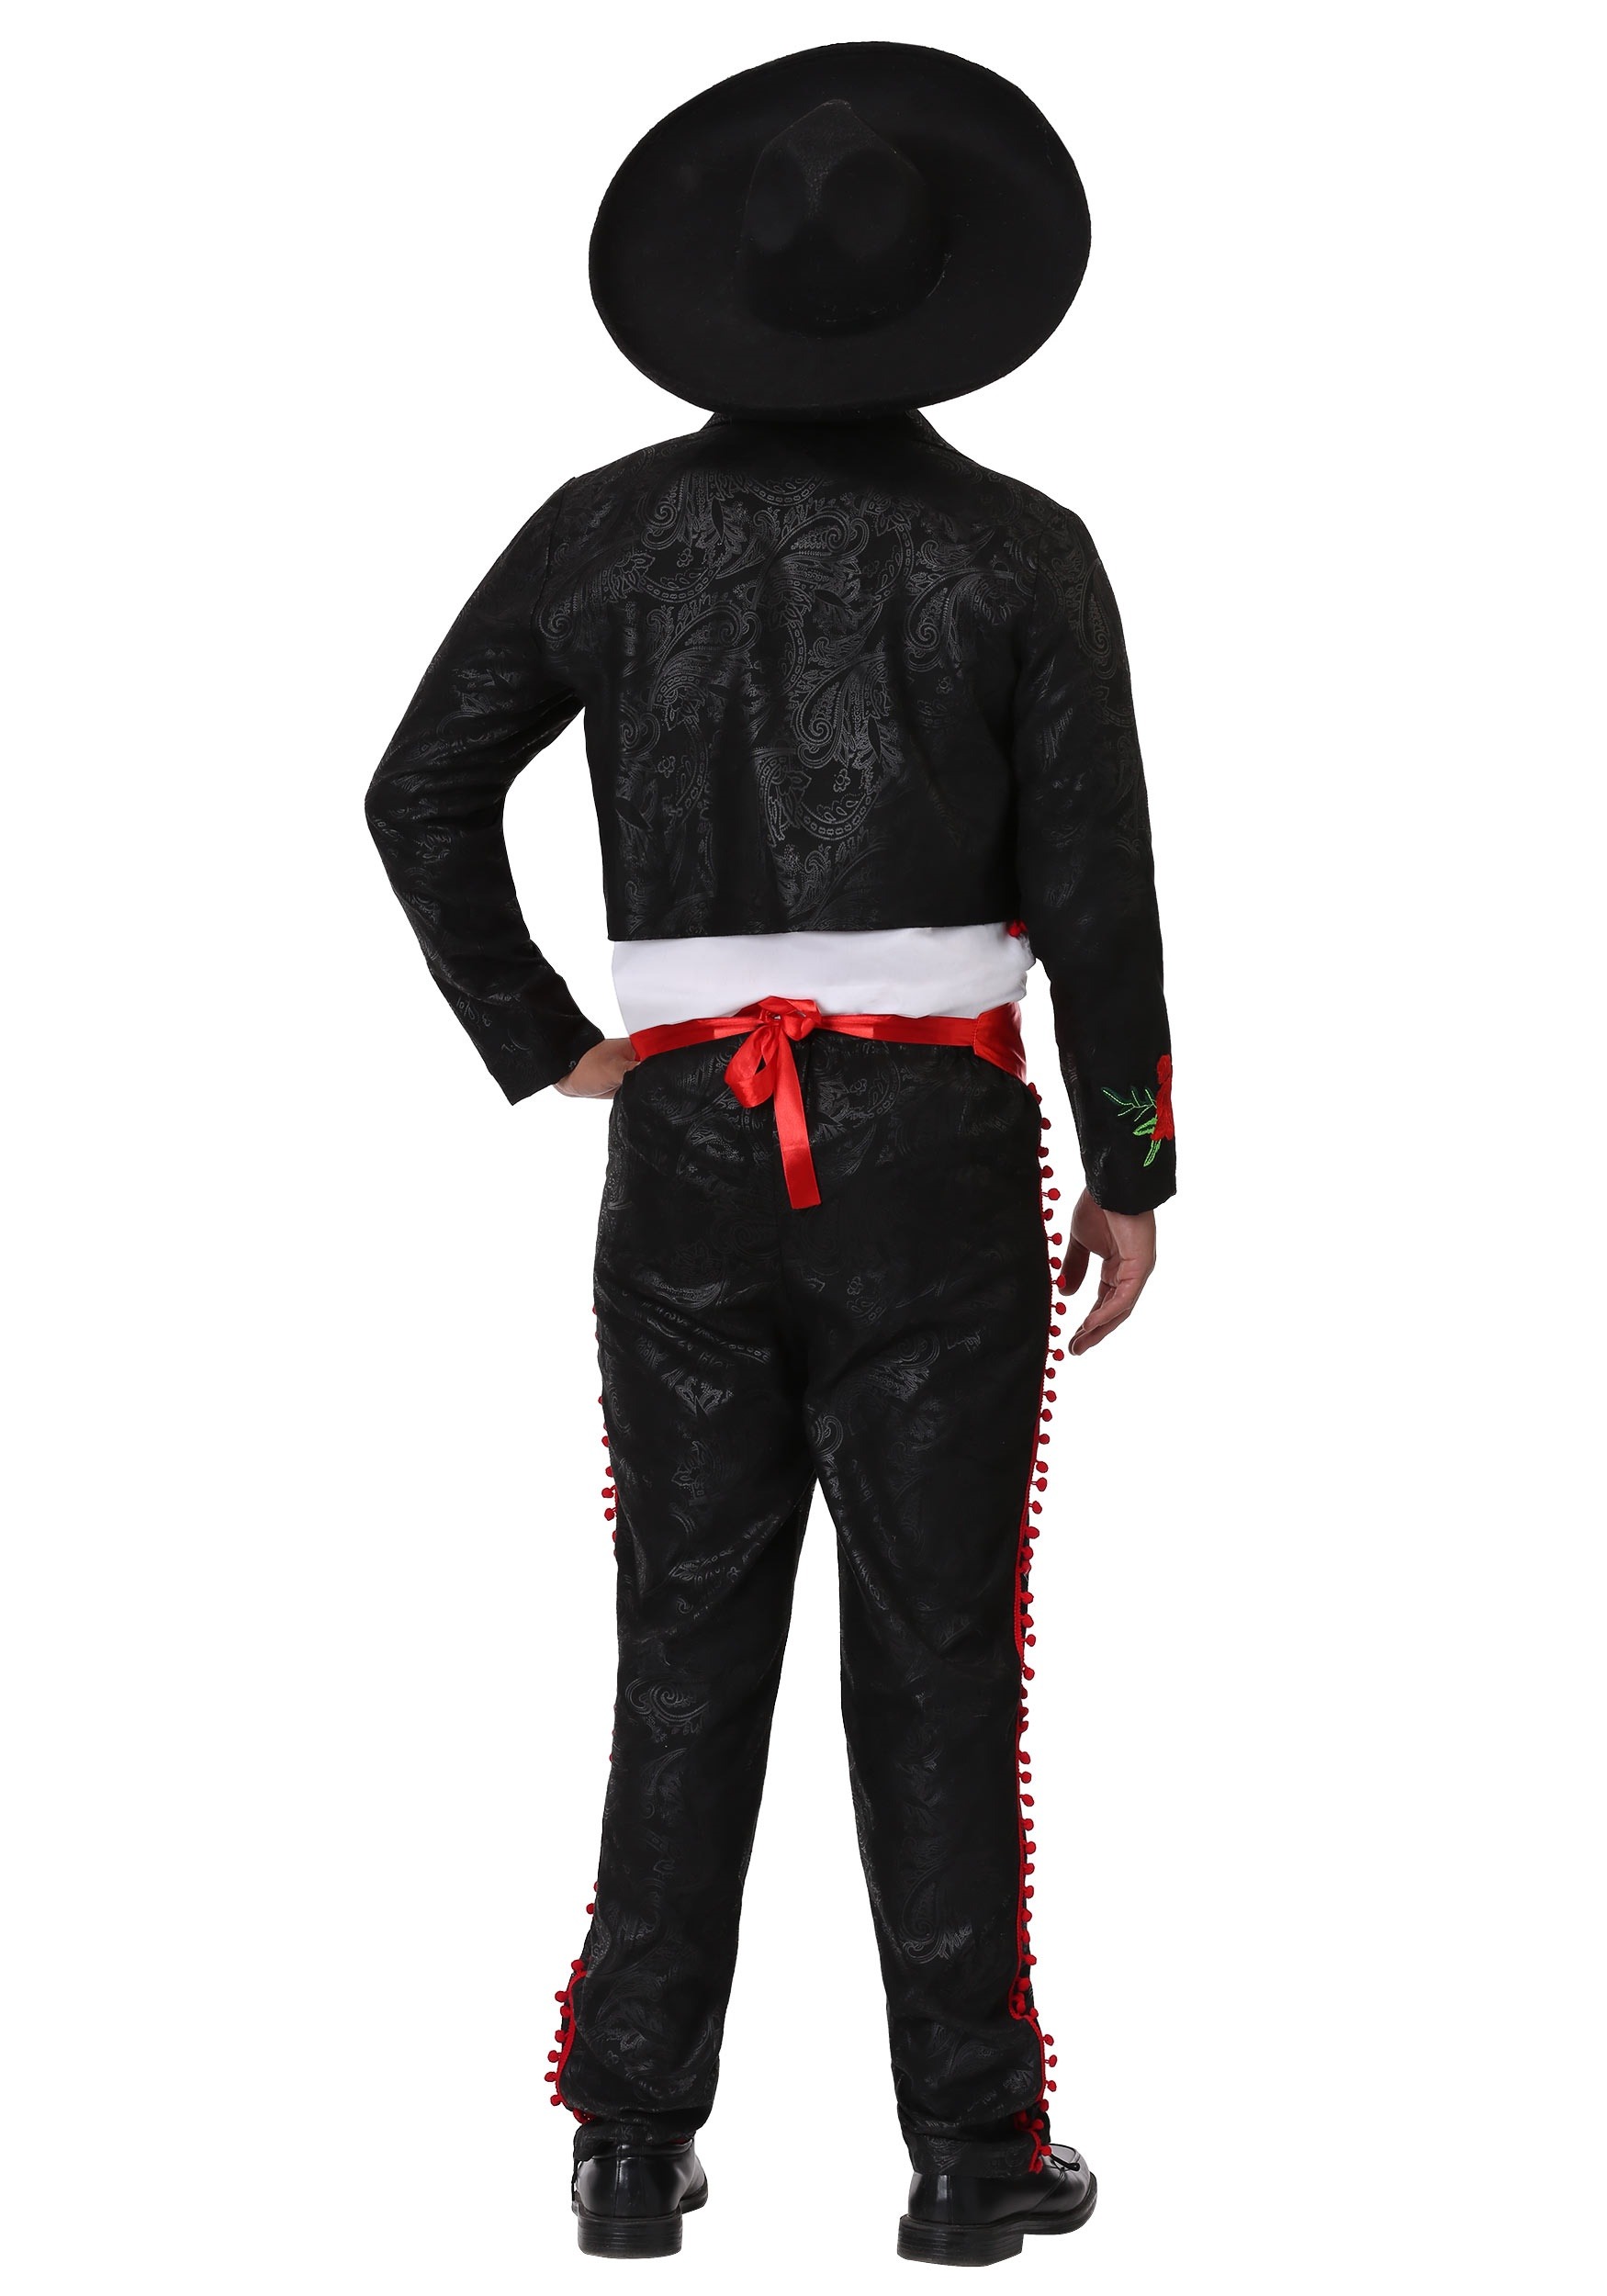 Adult Mariachi Costume